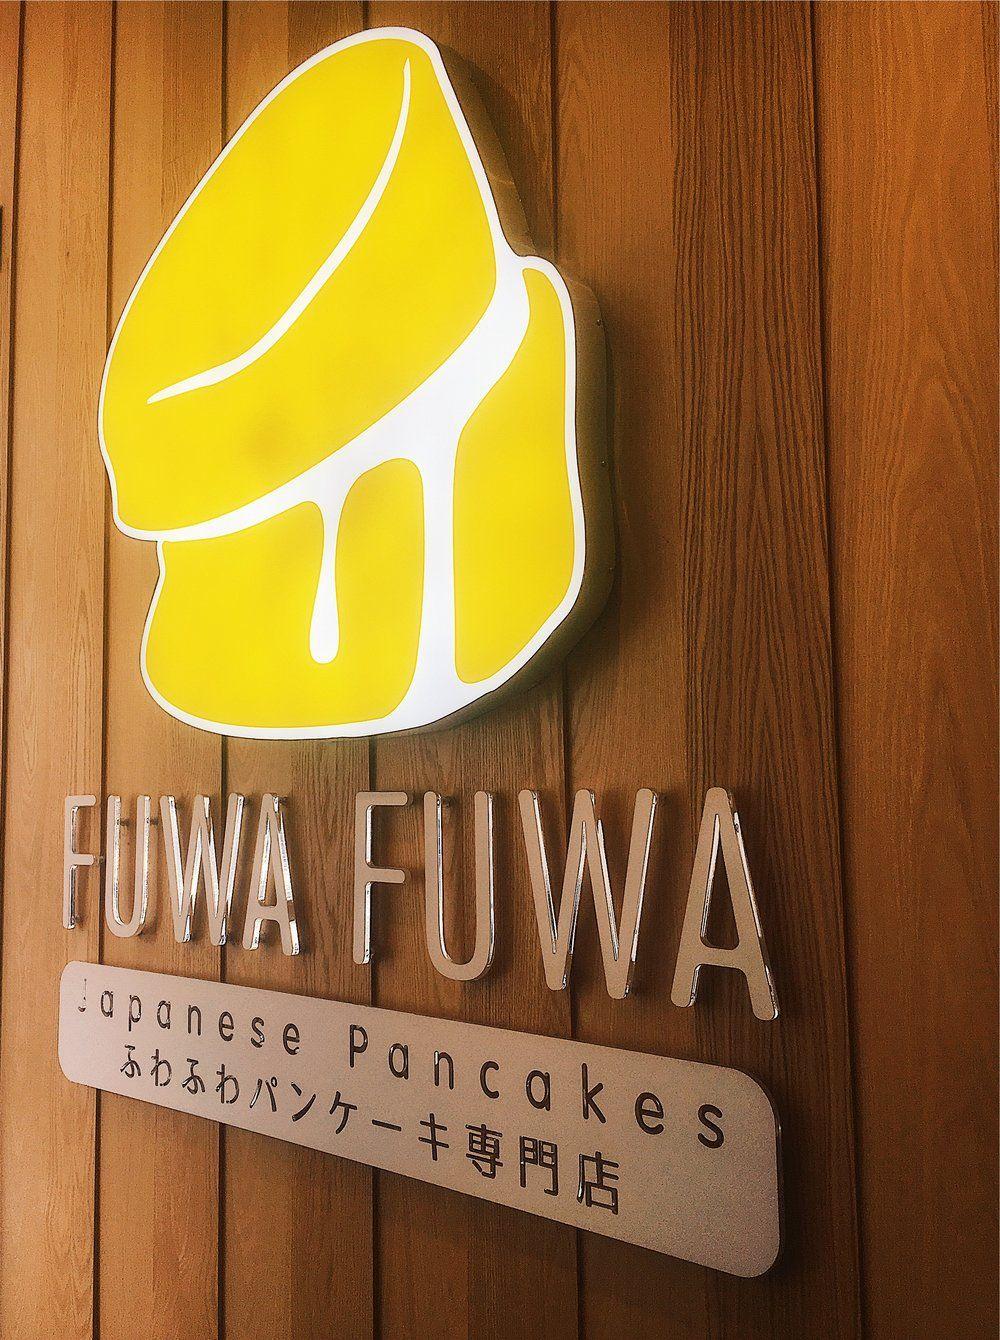 Fuwa Logo - Fuwa Fuwa Pancakes: Are Japanese Soufflé Pancakes Worth the Hype